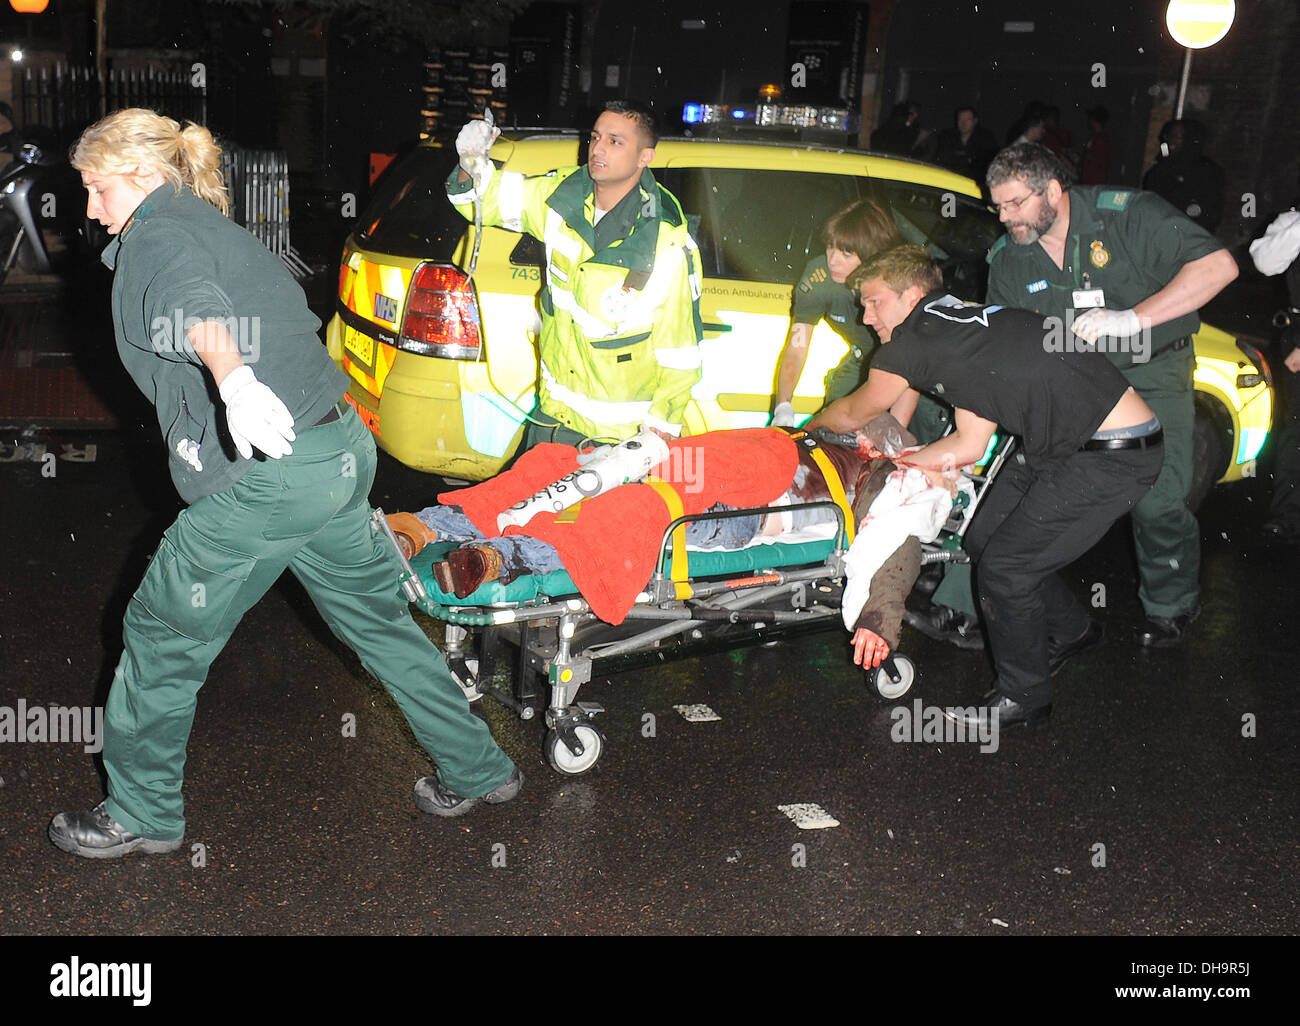 Acteur Kenny Solomons aide les ambulanciers ont assisté à des célébrités BBM Blackberry partie dans le sud de Londres lieu Bankside sur voûtes Banque D'Images